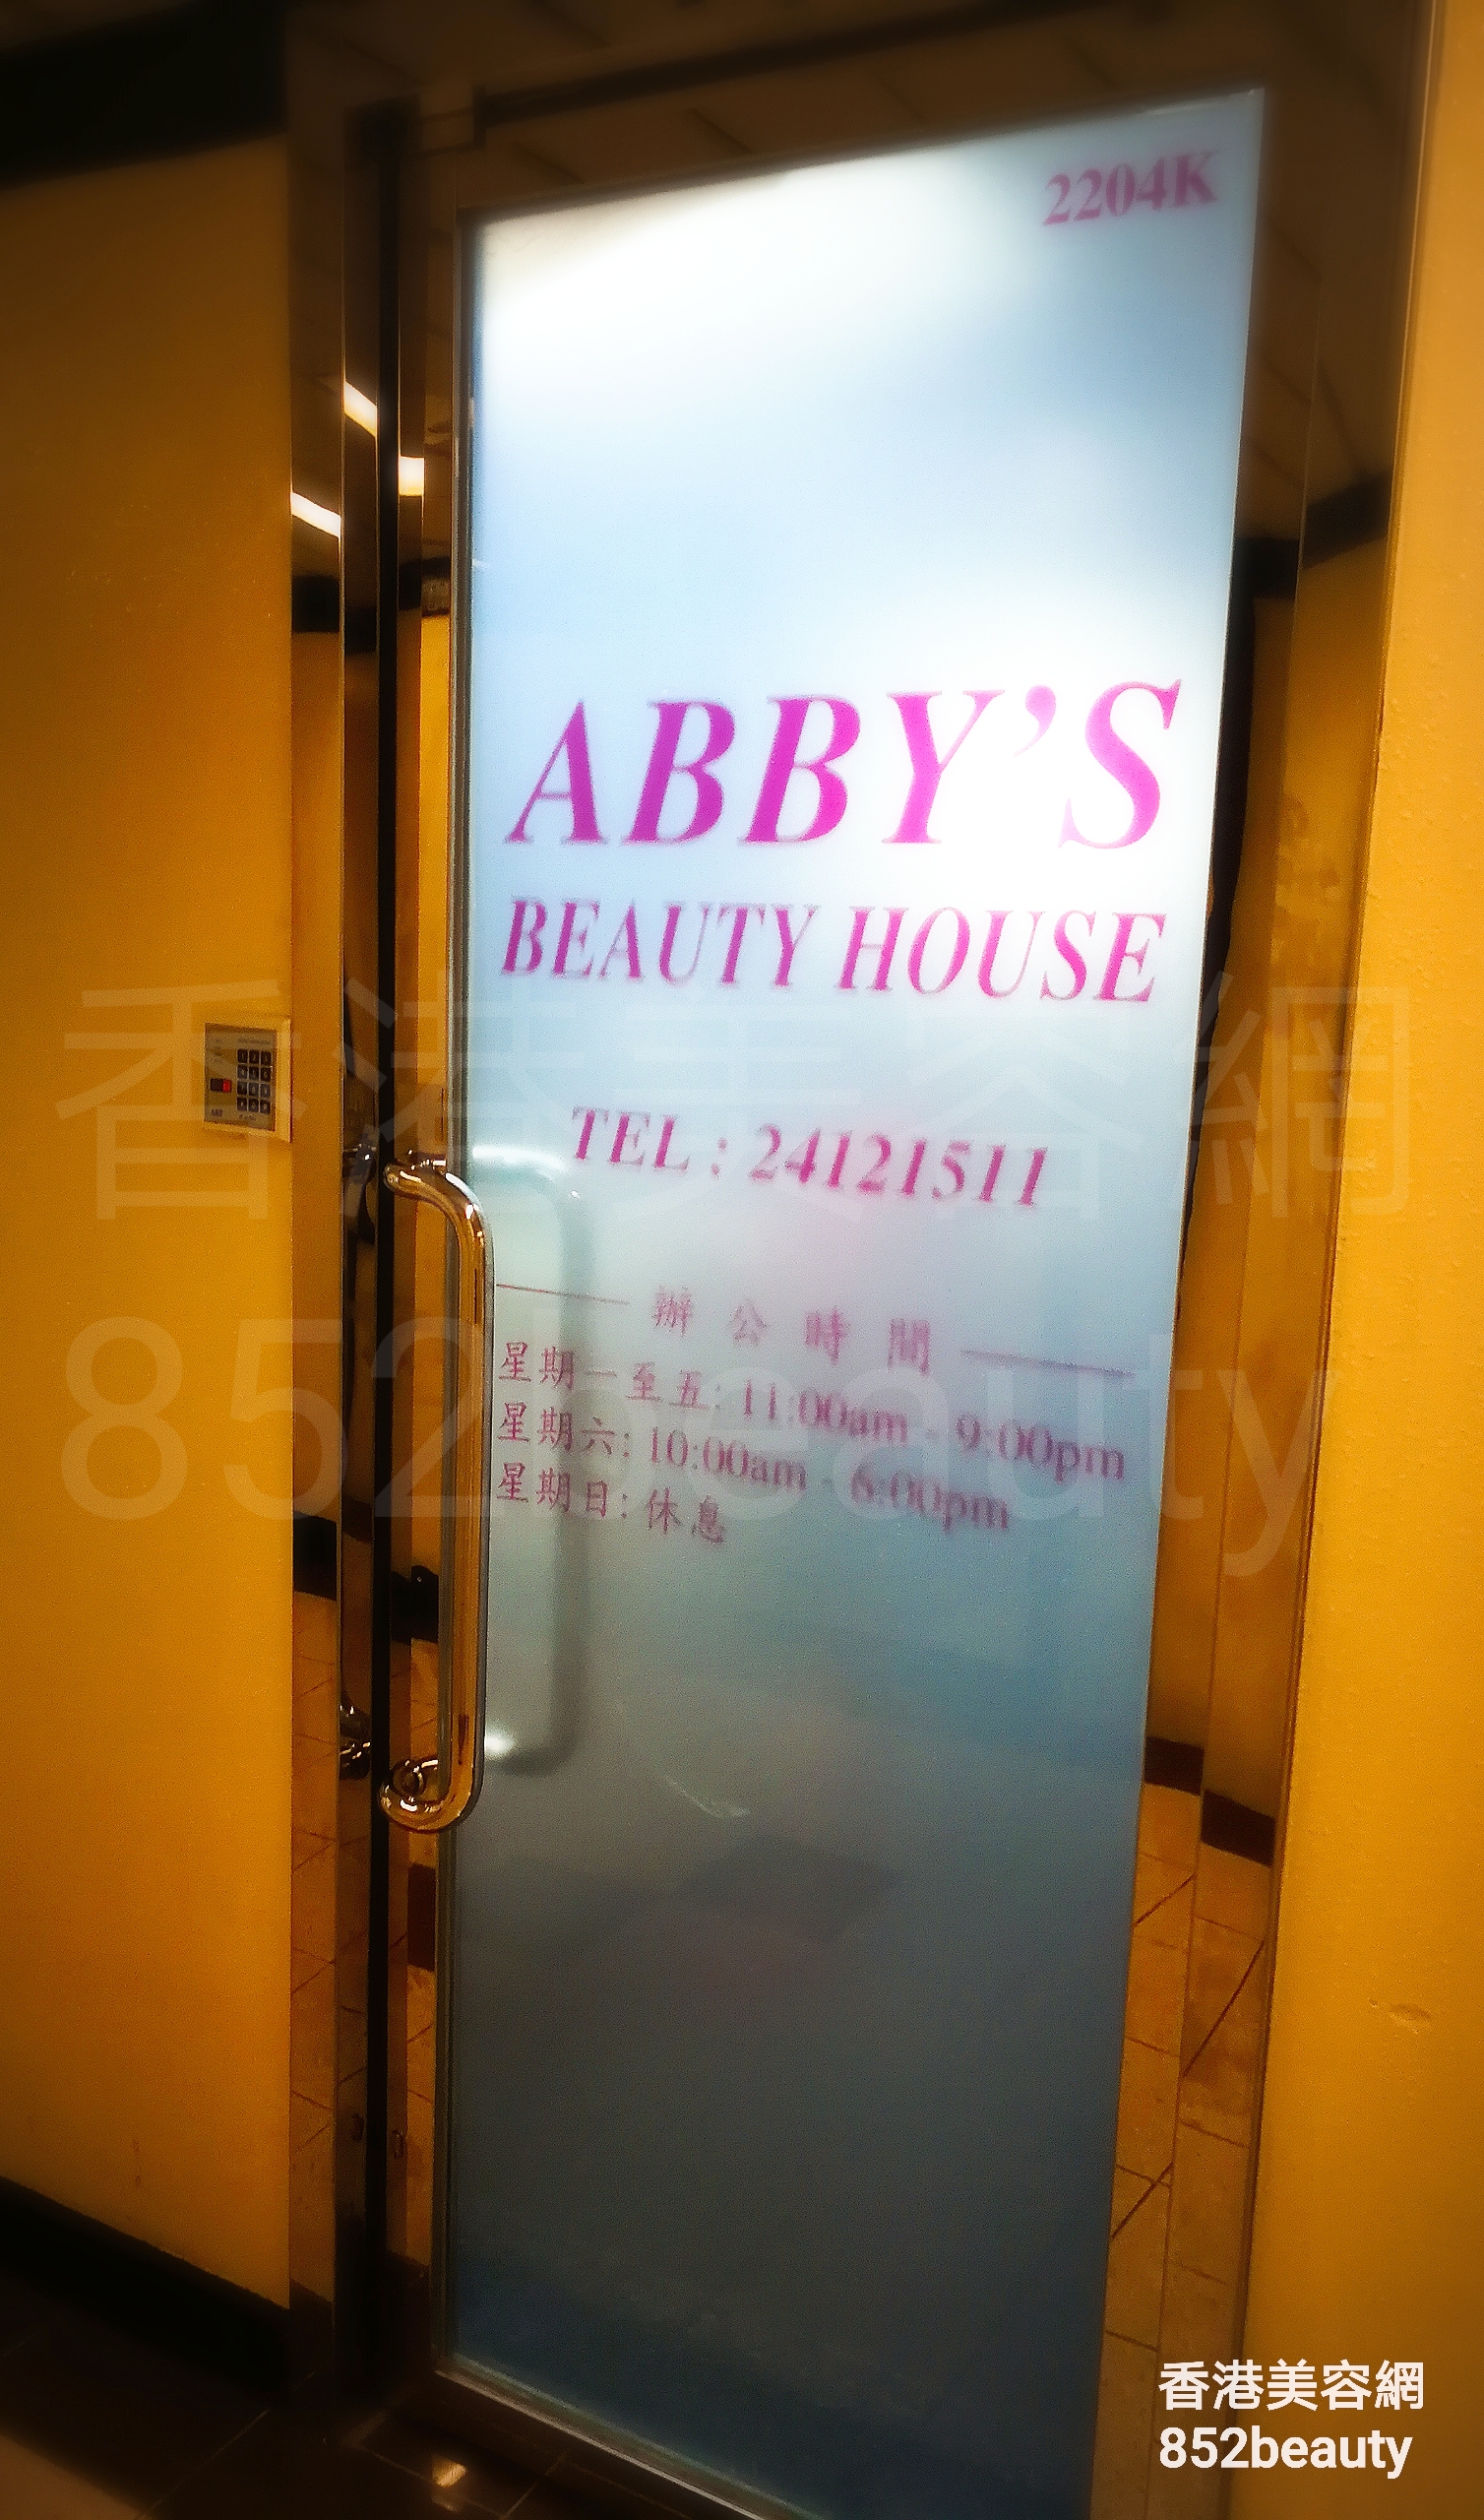 香港美容網 Hong Kong Beauty Salon 美容院 / 美容師: ABBY'S BEAUTY HOUSE (荃灣)